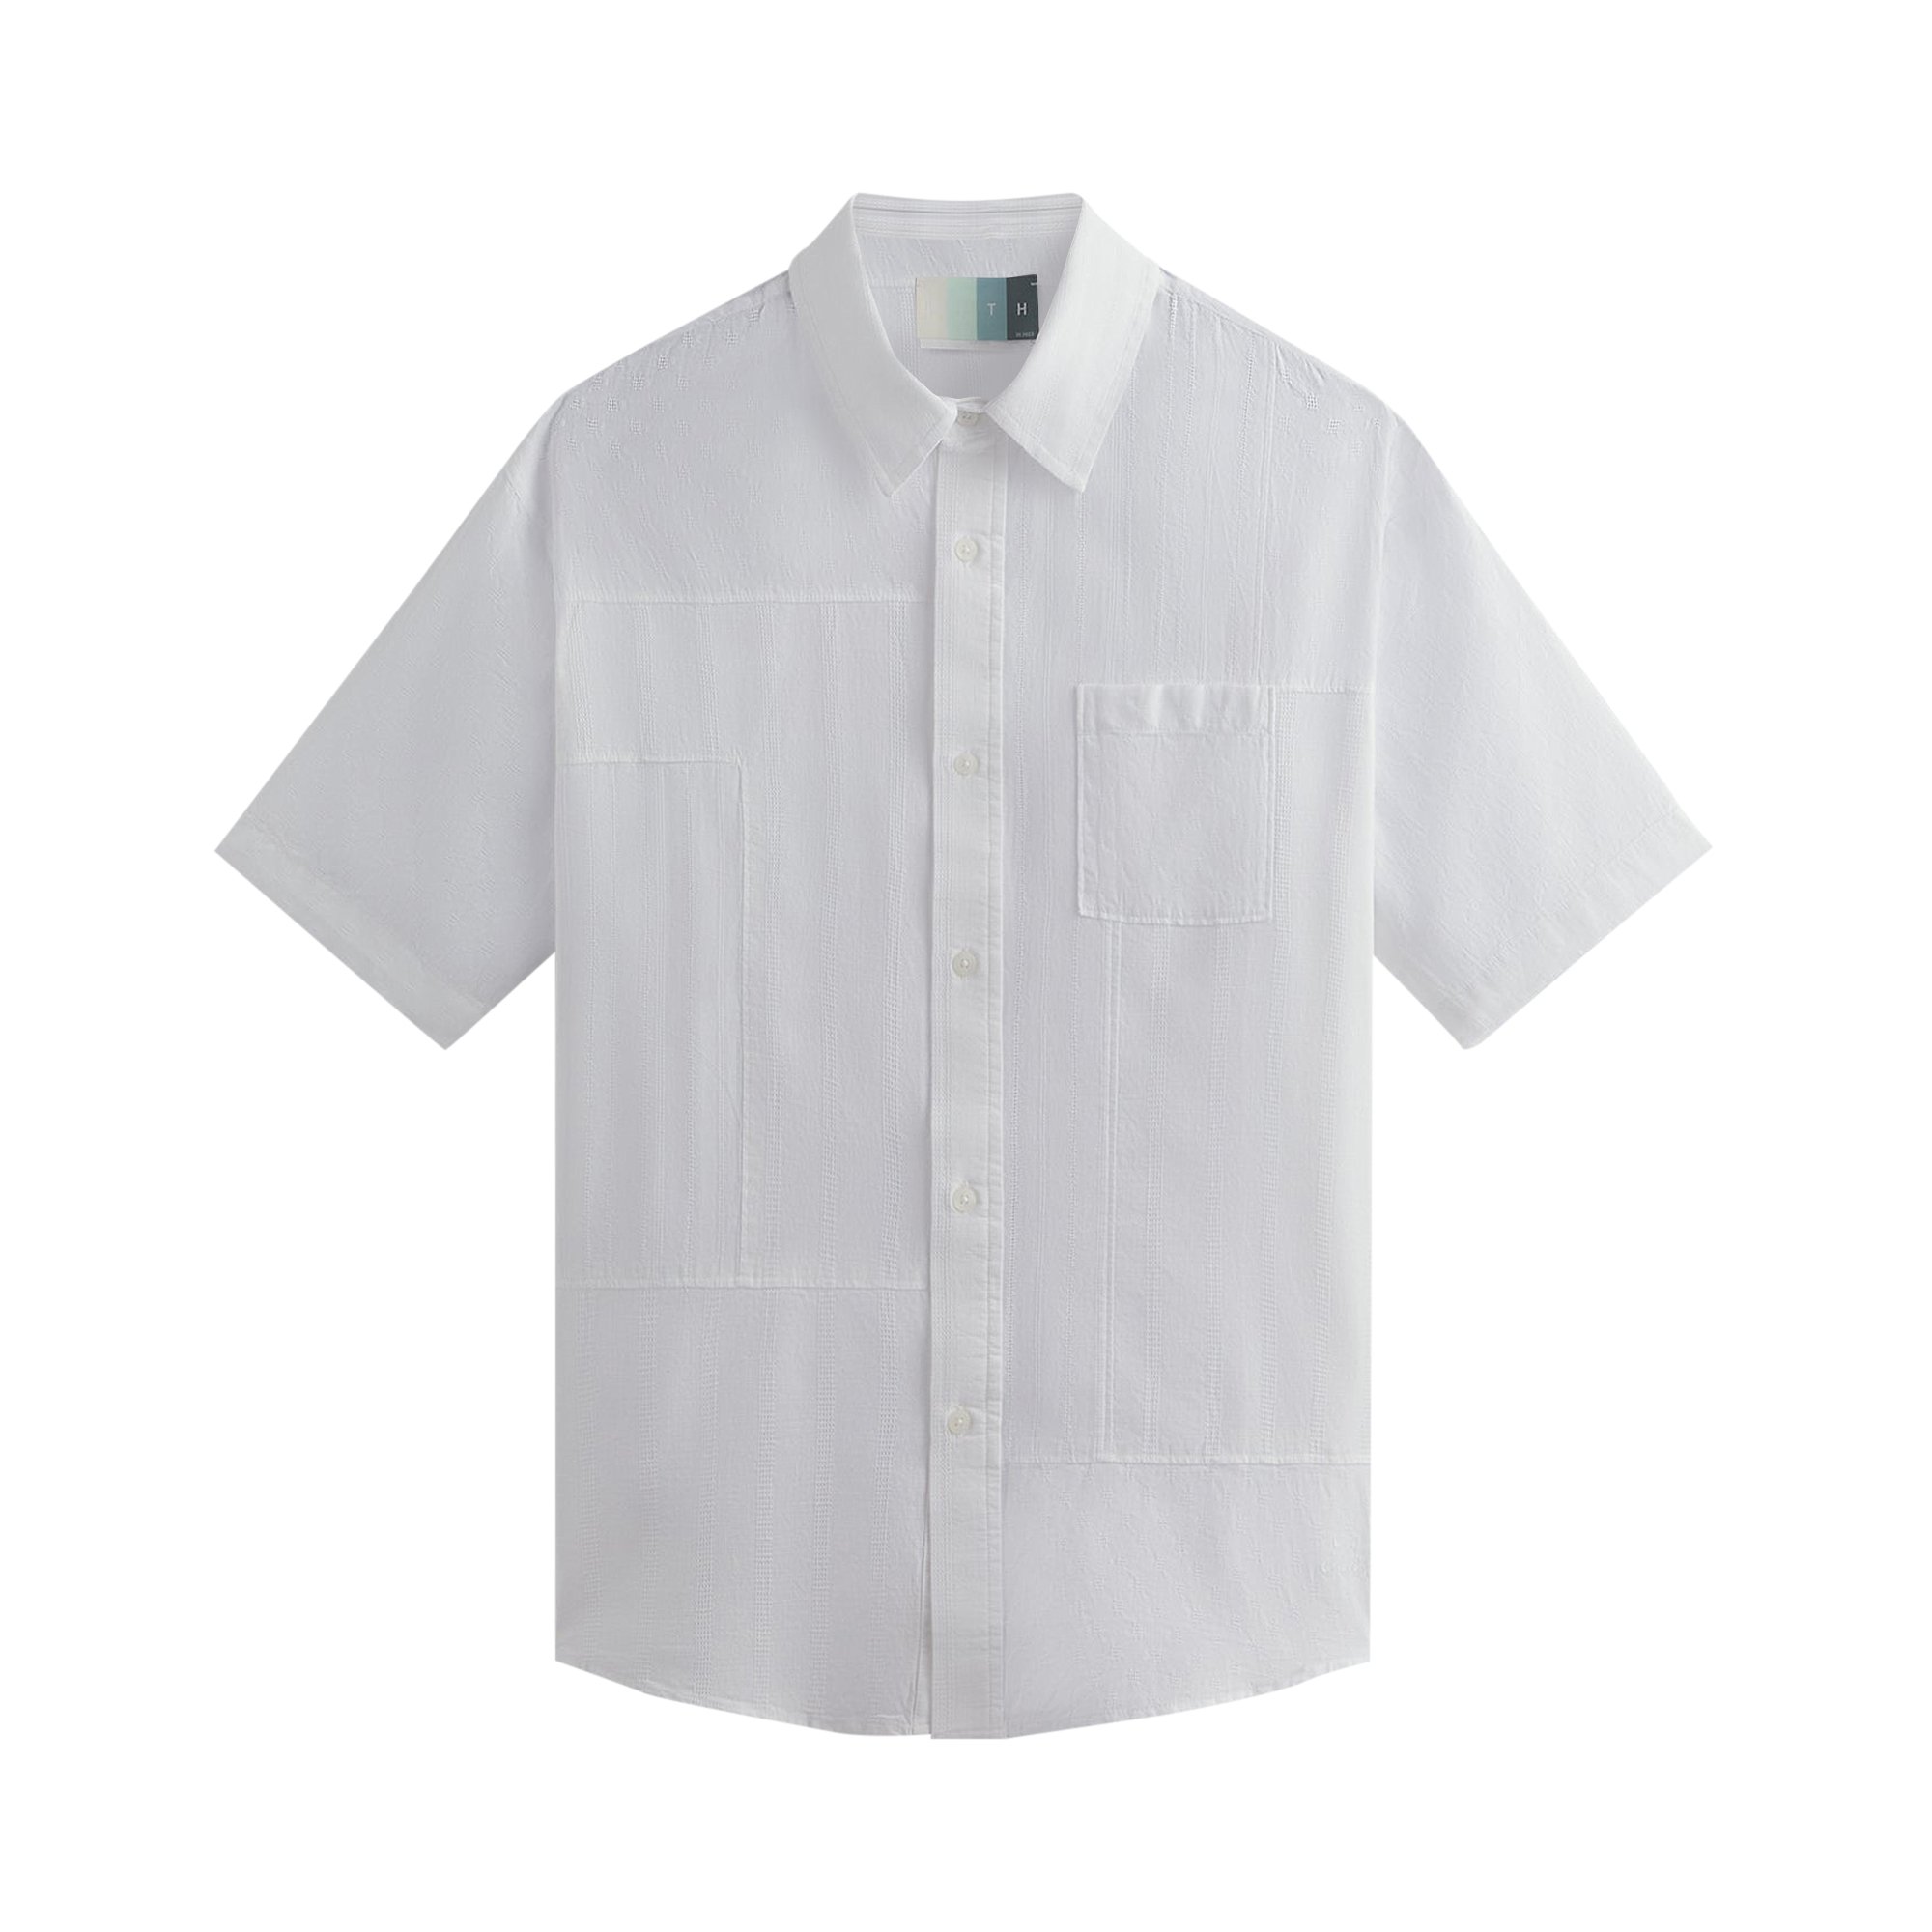 Buy Kith Mixed Dobby Apollo Shirt 'White' - KHM031120 101 | GOAT